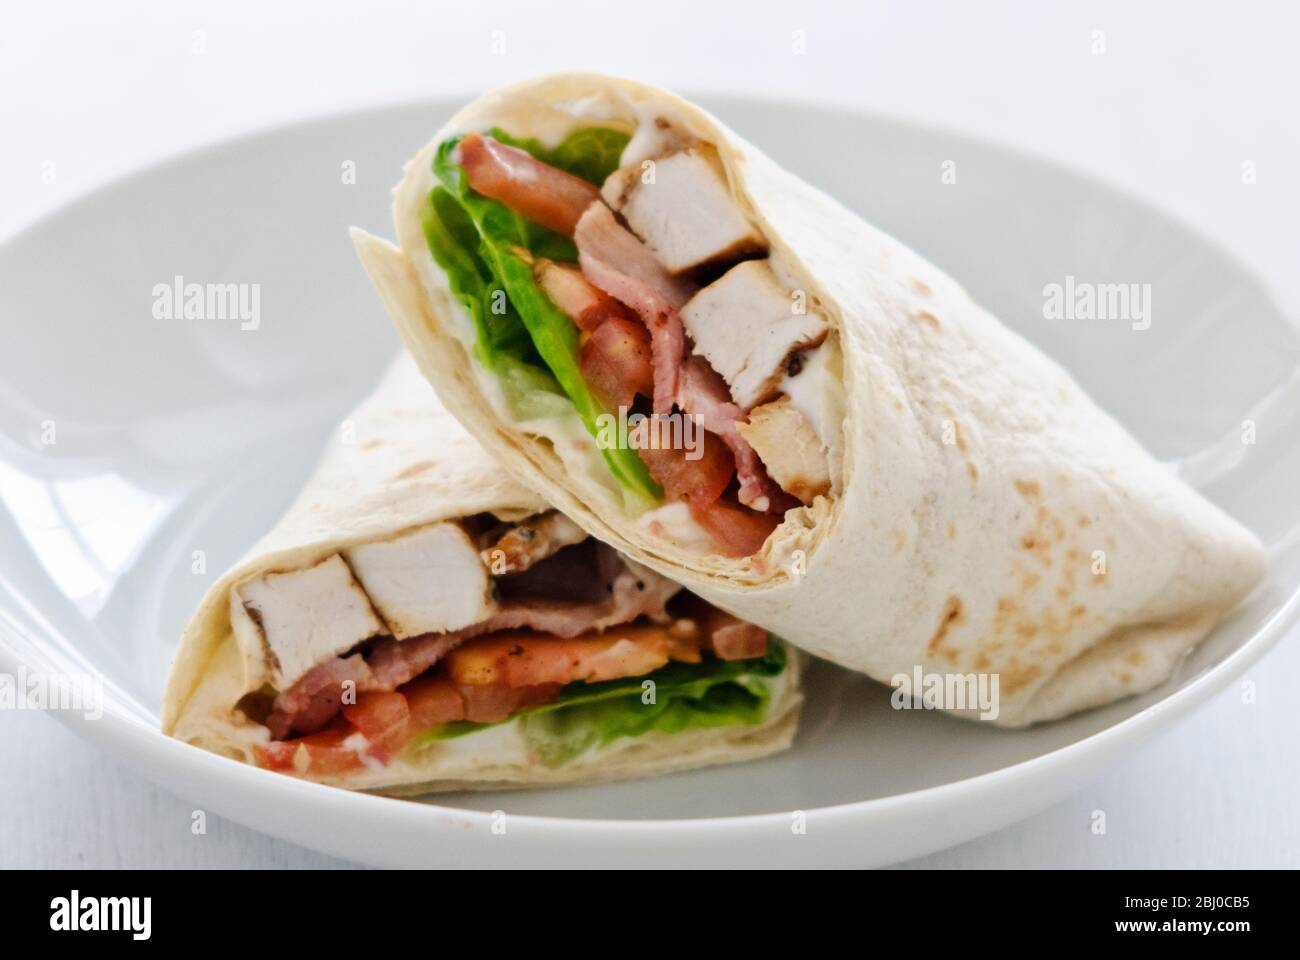 Sandwich Wrap mit Huhn, Speck, Tomaten und Salat - Stockfoto